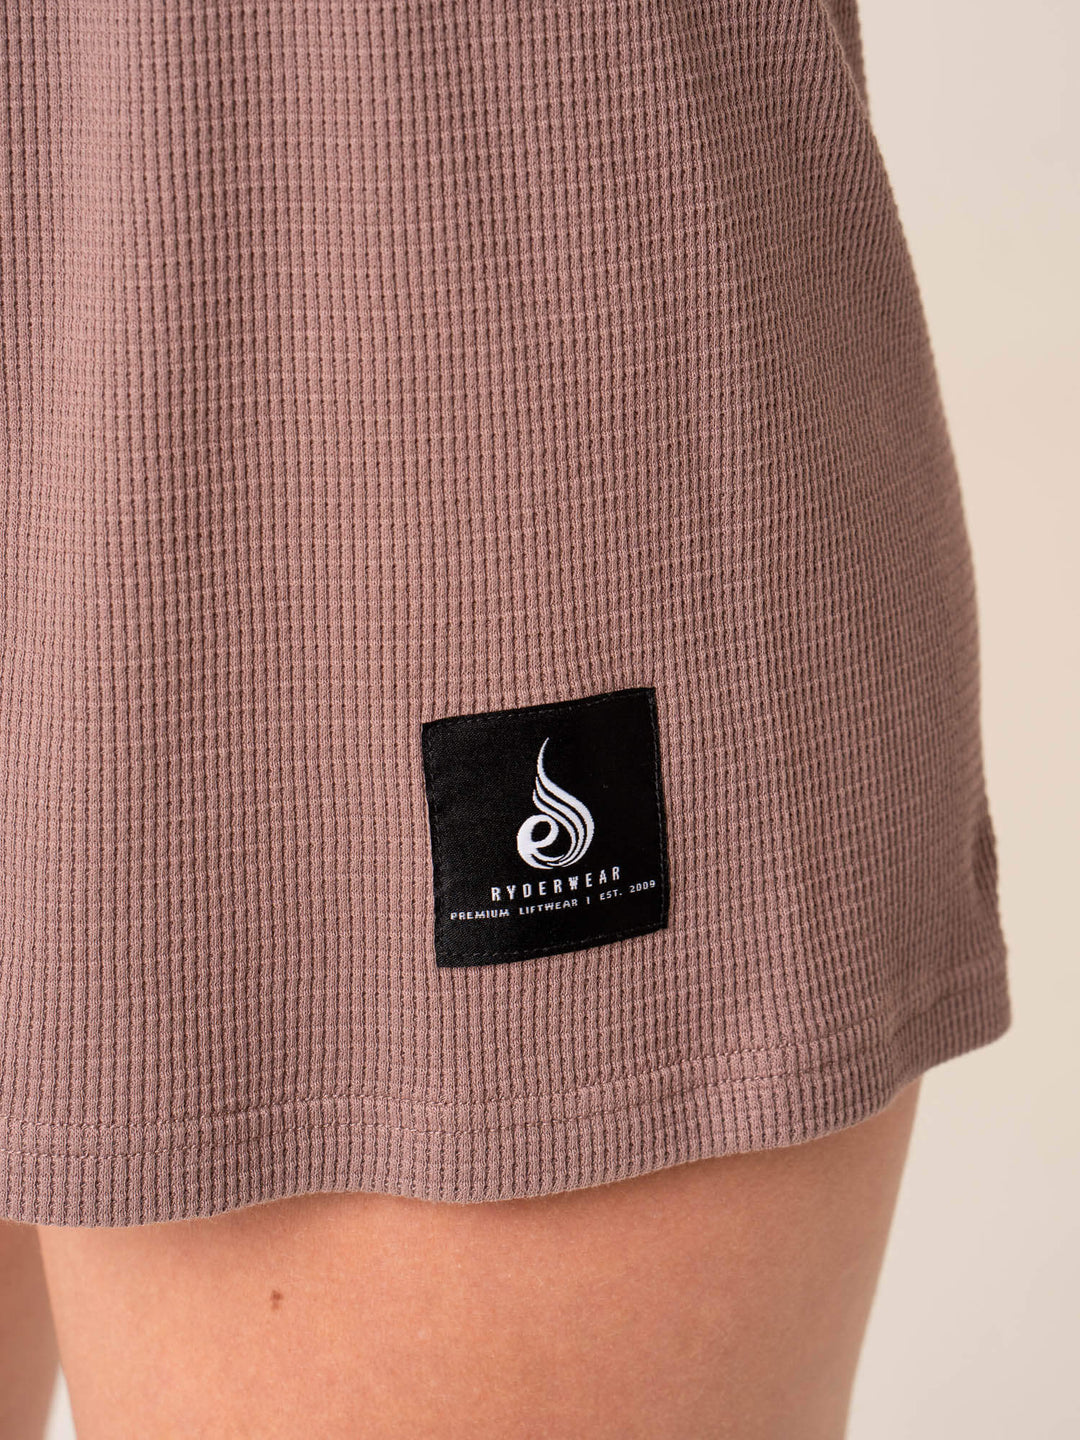 Women's Waffle Lounge Shorts - Taupe Clothing Ryderwear 